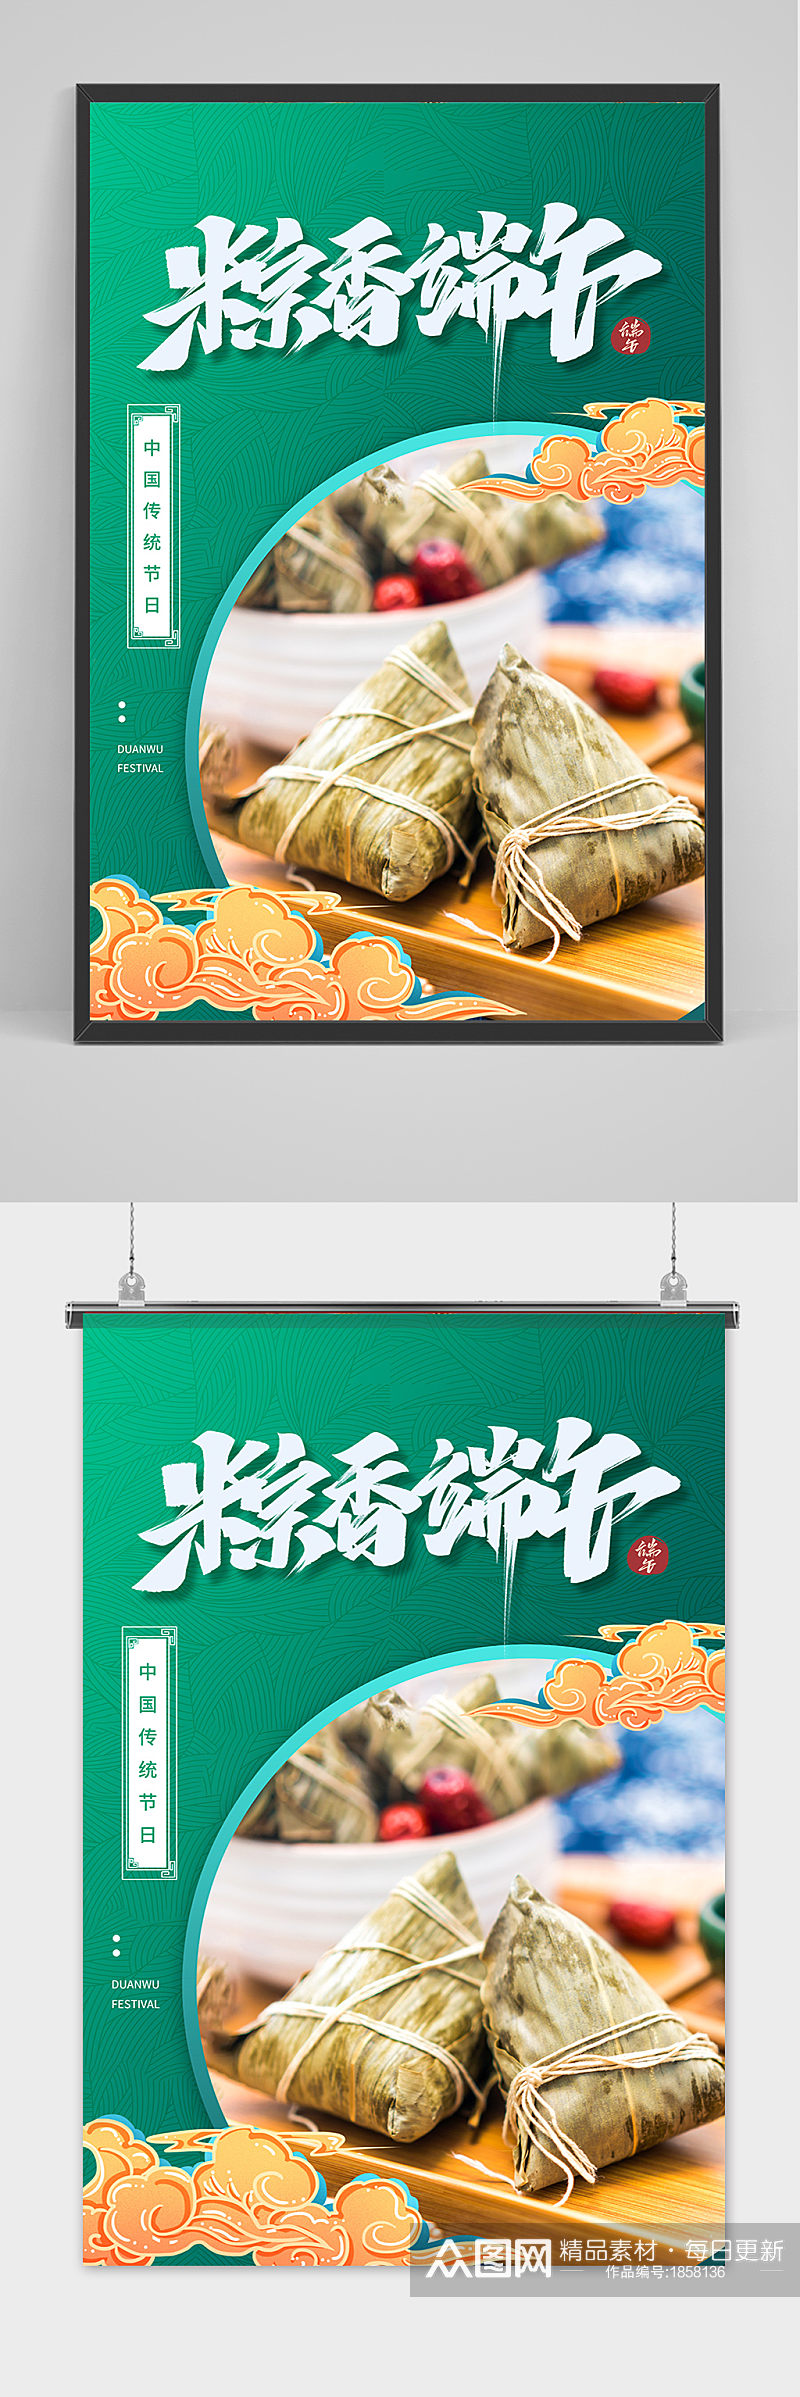 绿色大气端午节中国风海报素材